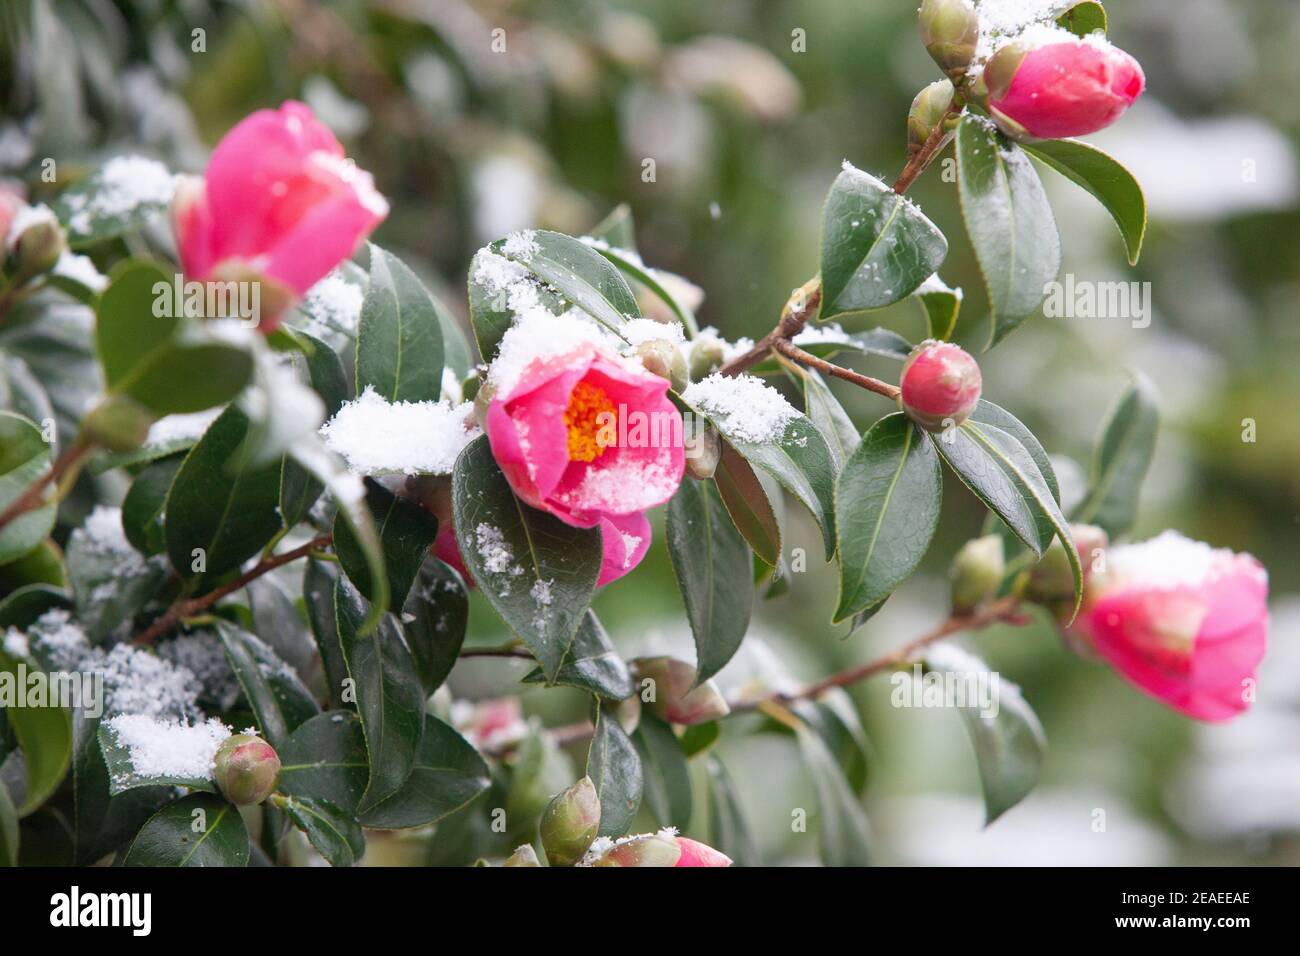 Londres, Royaume-Uni. 9 février 2021: Après trois jours de neige à Londres, il commence à s'établir et les vents ont chuté au fur et à mesure que la tempête Darcy est passée. Une fleur de camelia rose est dépoussiérée de neige. Anna Watson/Alay Live News Banque D'Images